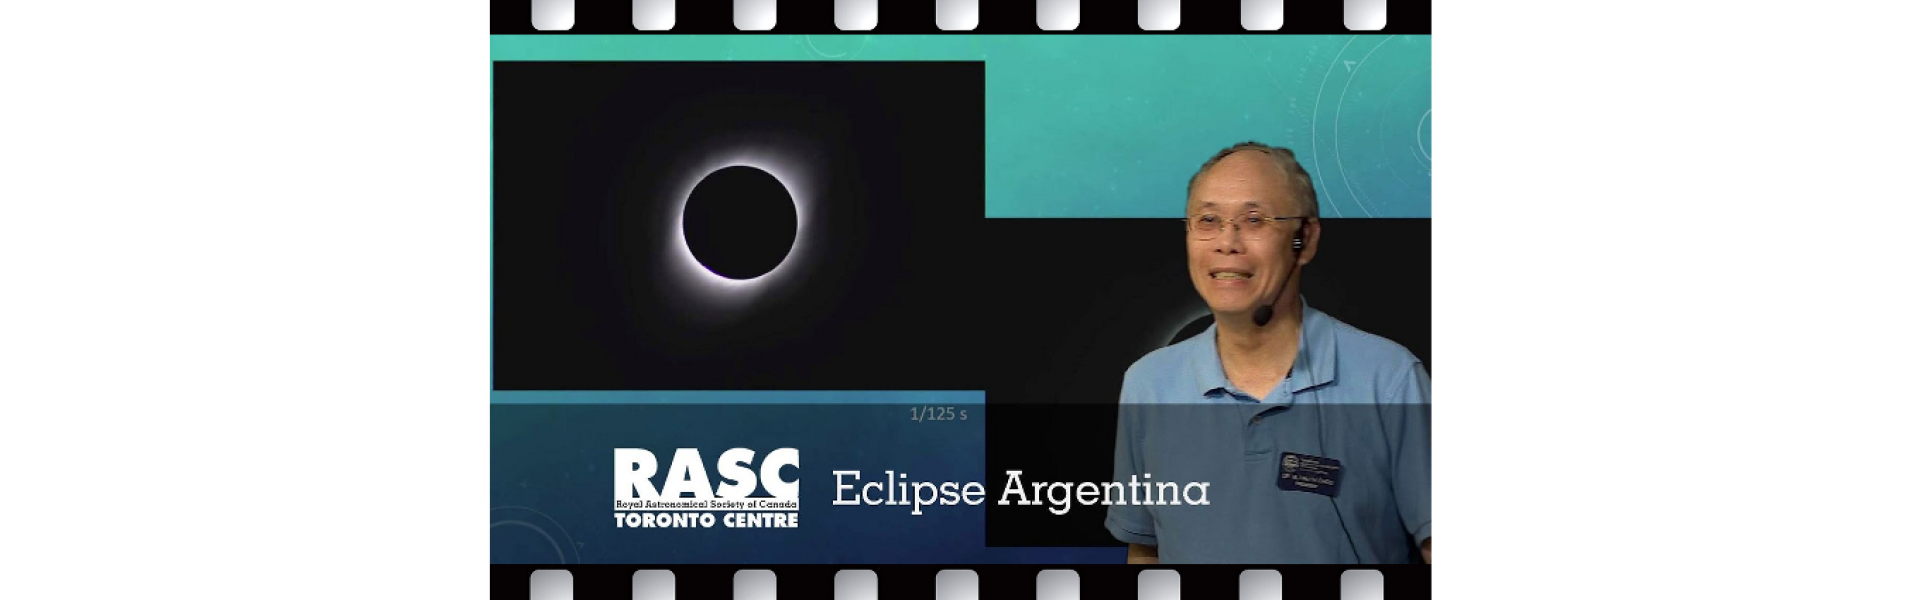 Eclipse Argentina 2019